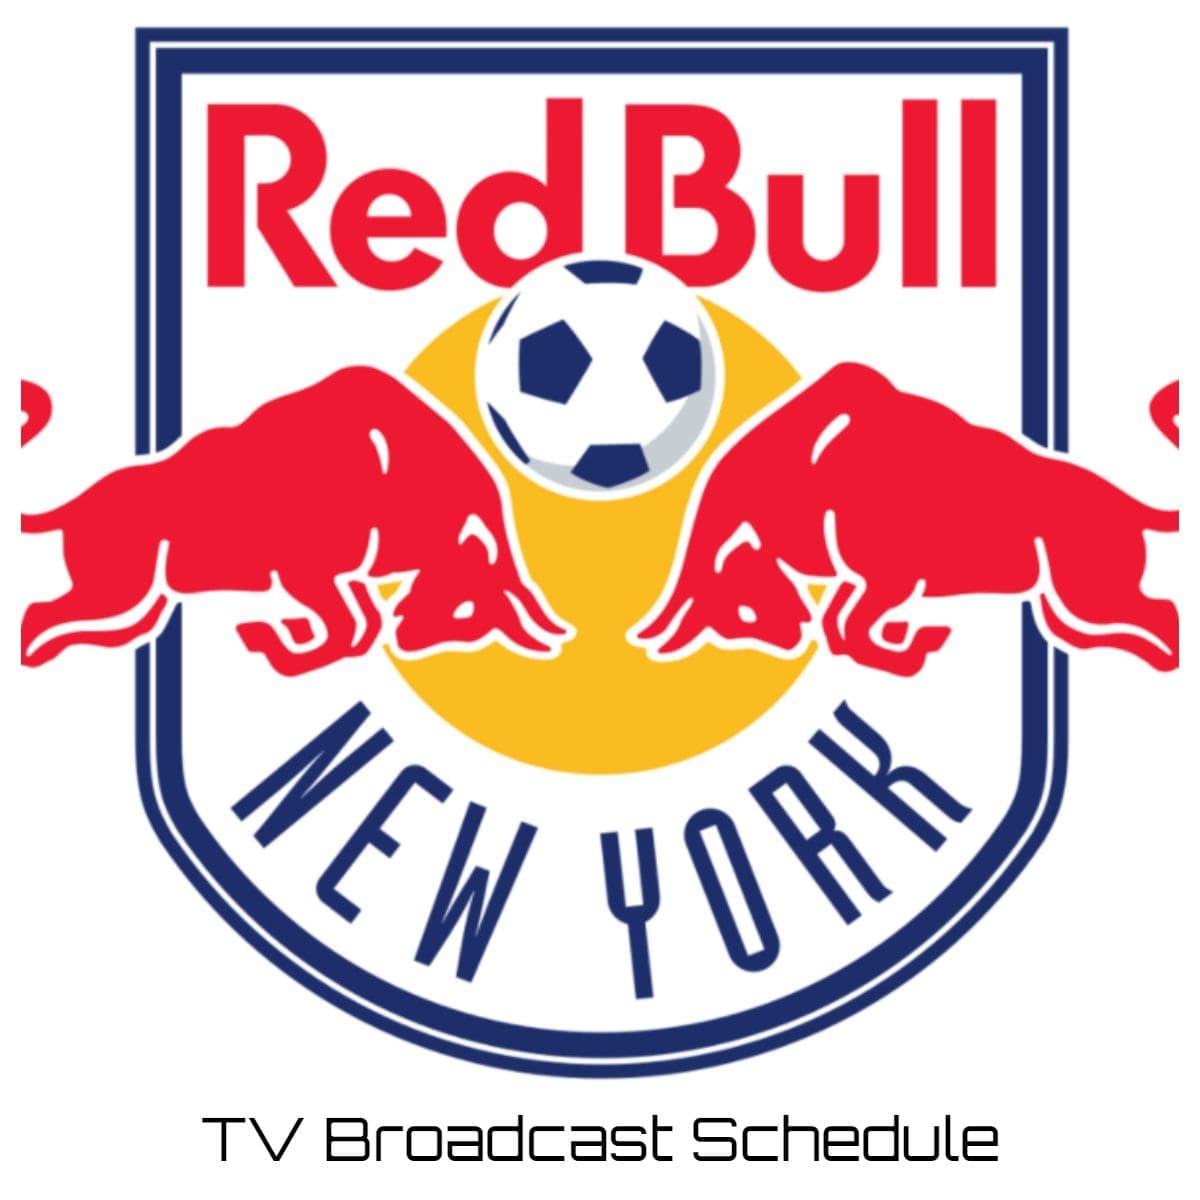 New York Red Bulls TV Broadcast Schedule